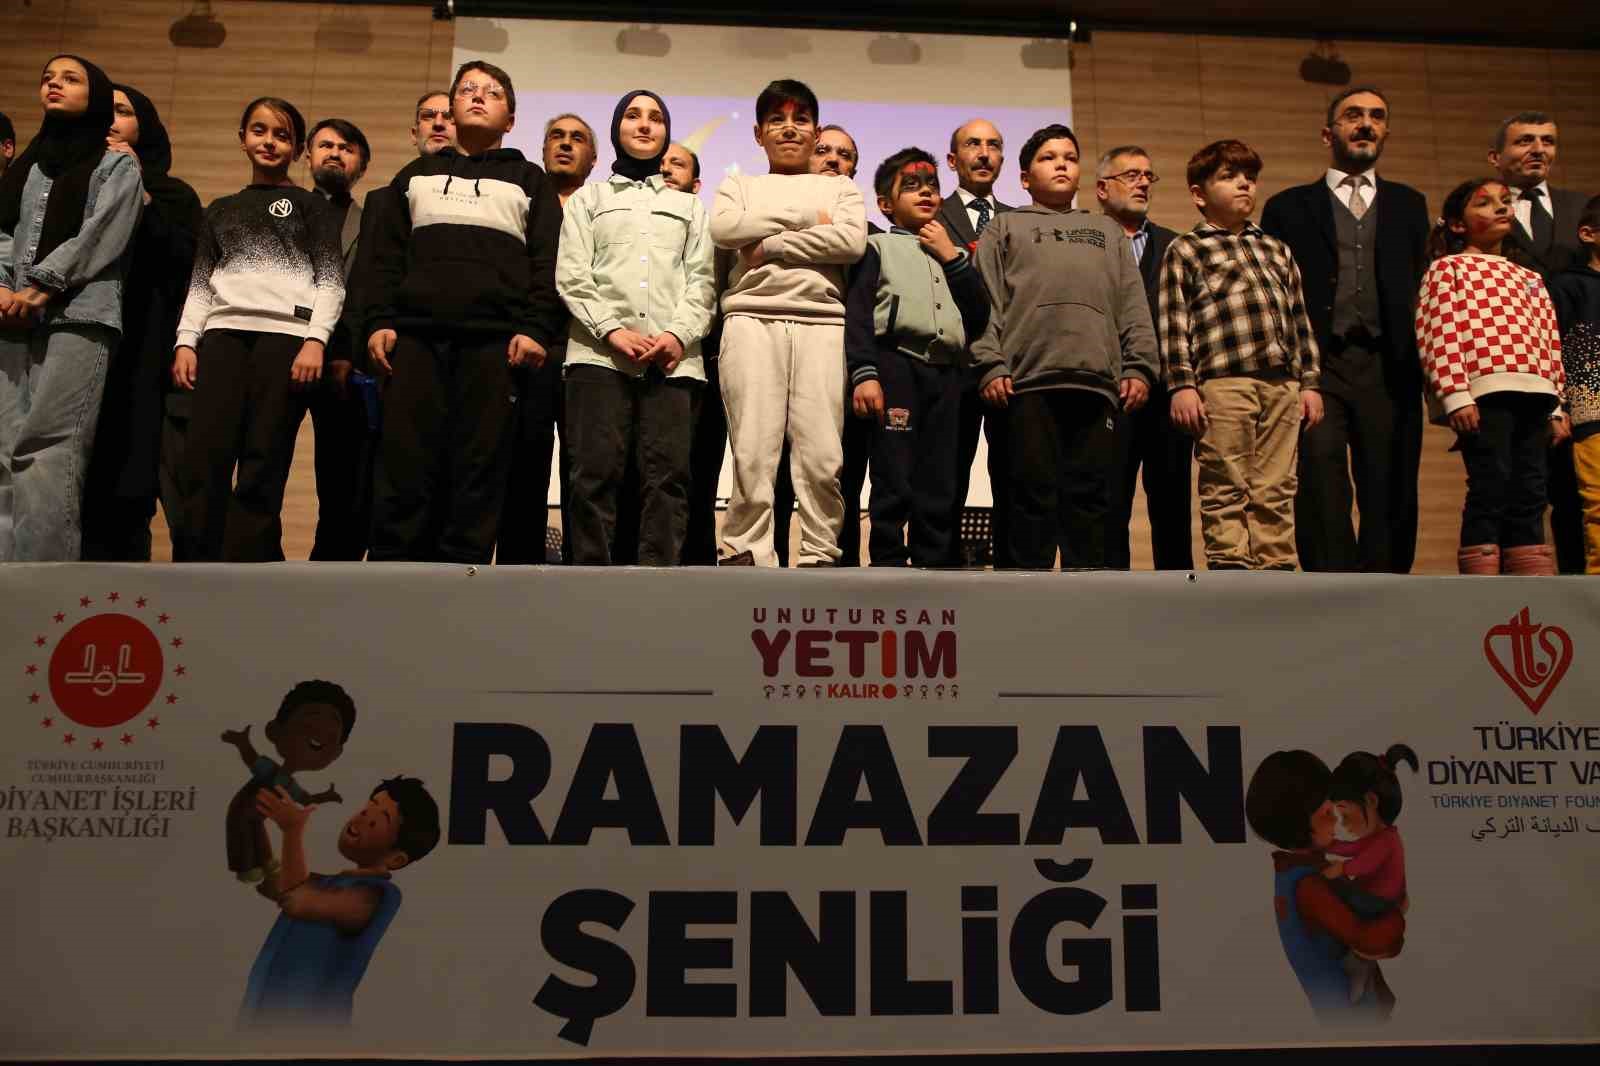 Türkiye Diyanet Vakfı Genel Müdüfü Turan: “5 bin 818 yetimi himaye etmeye çalışan bir vakıfız”